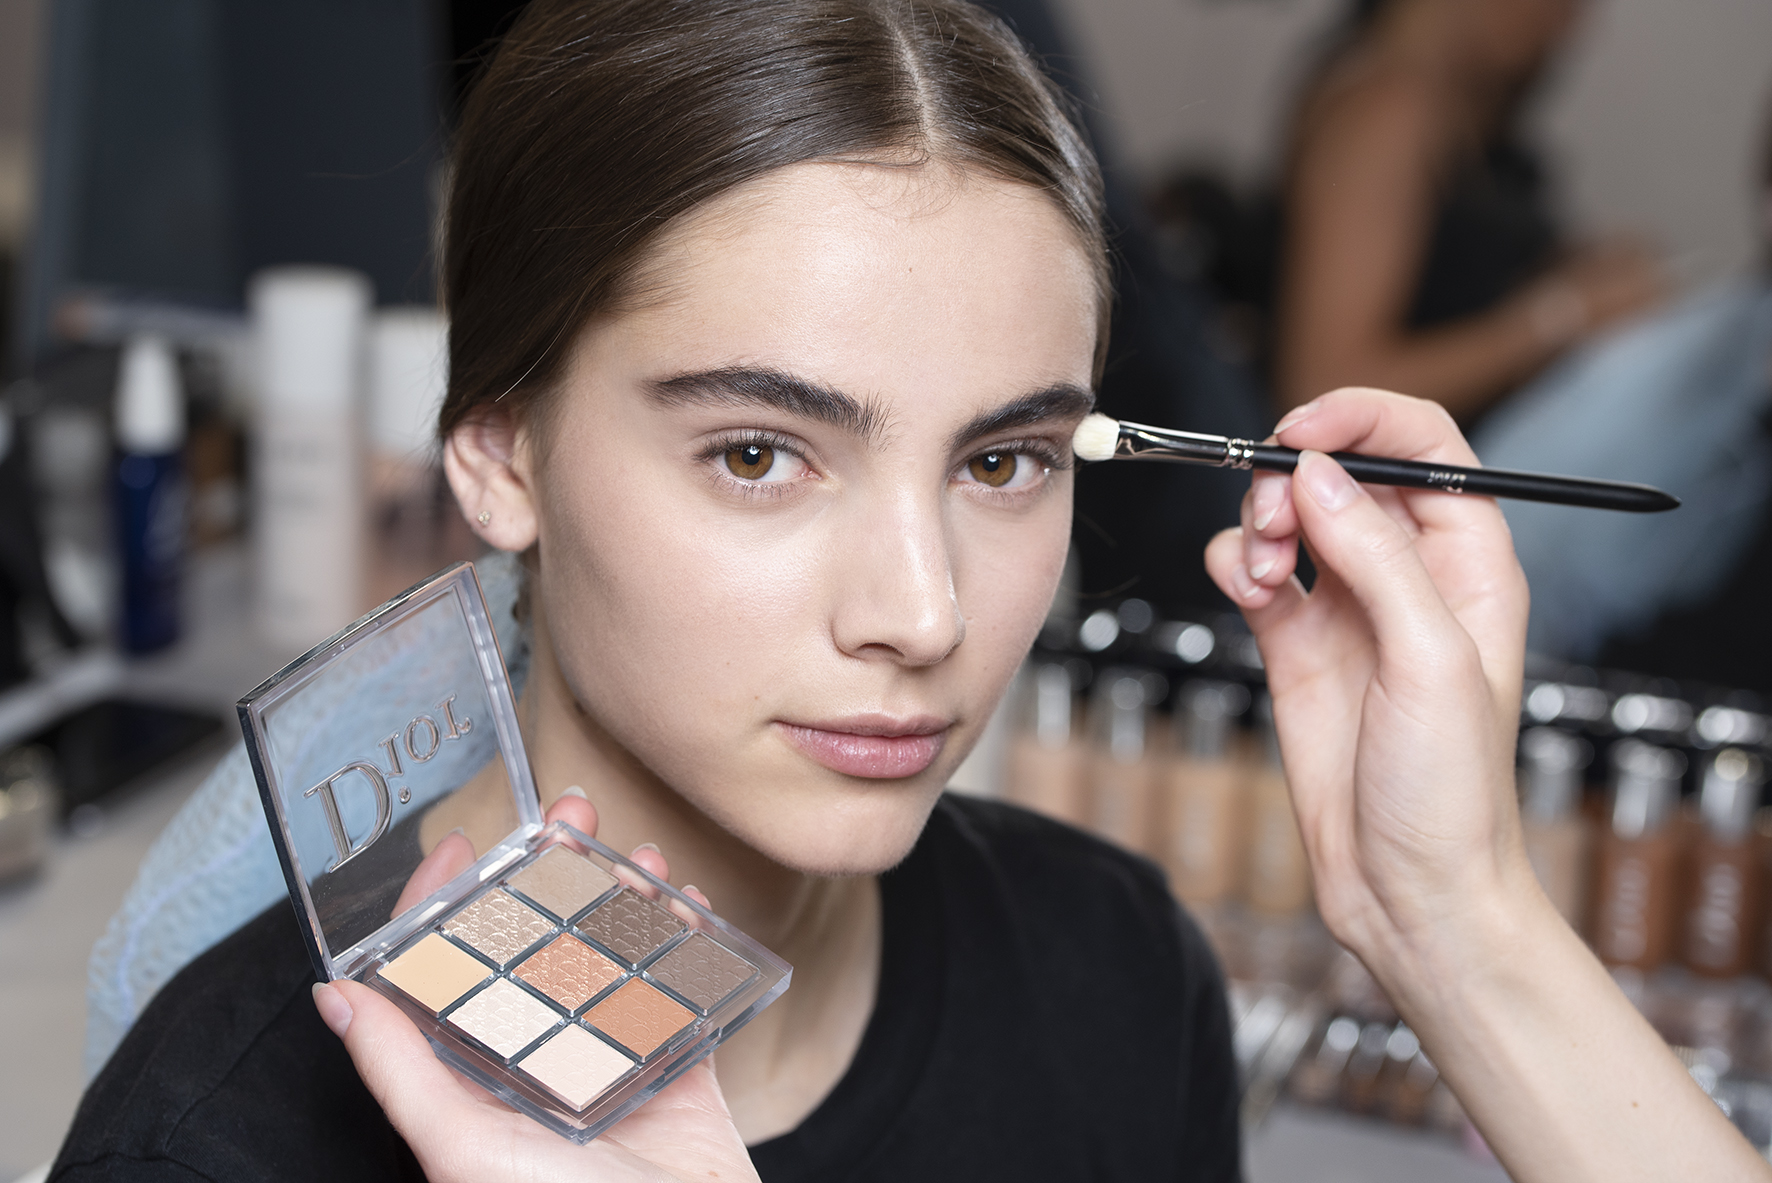 dior 2019 makeup